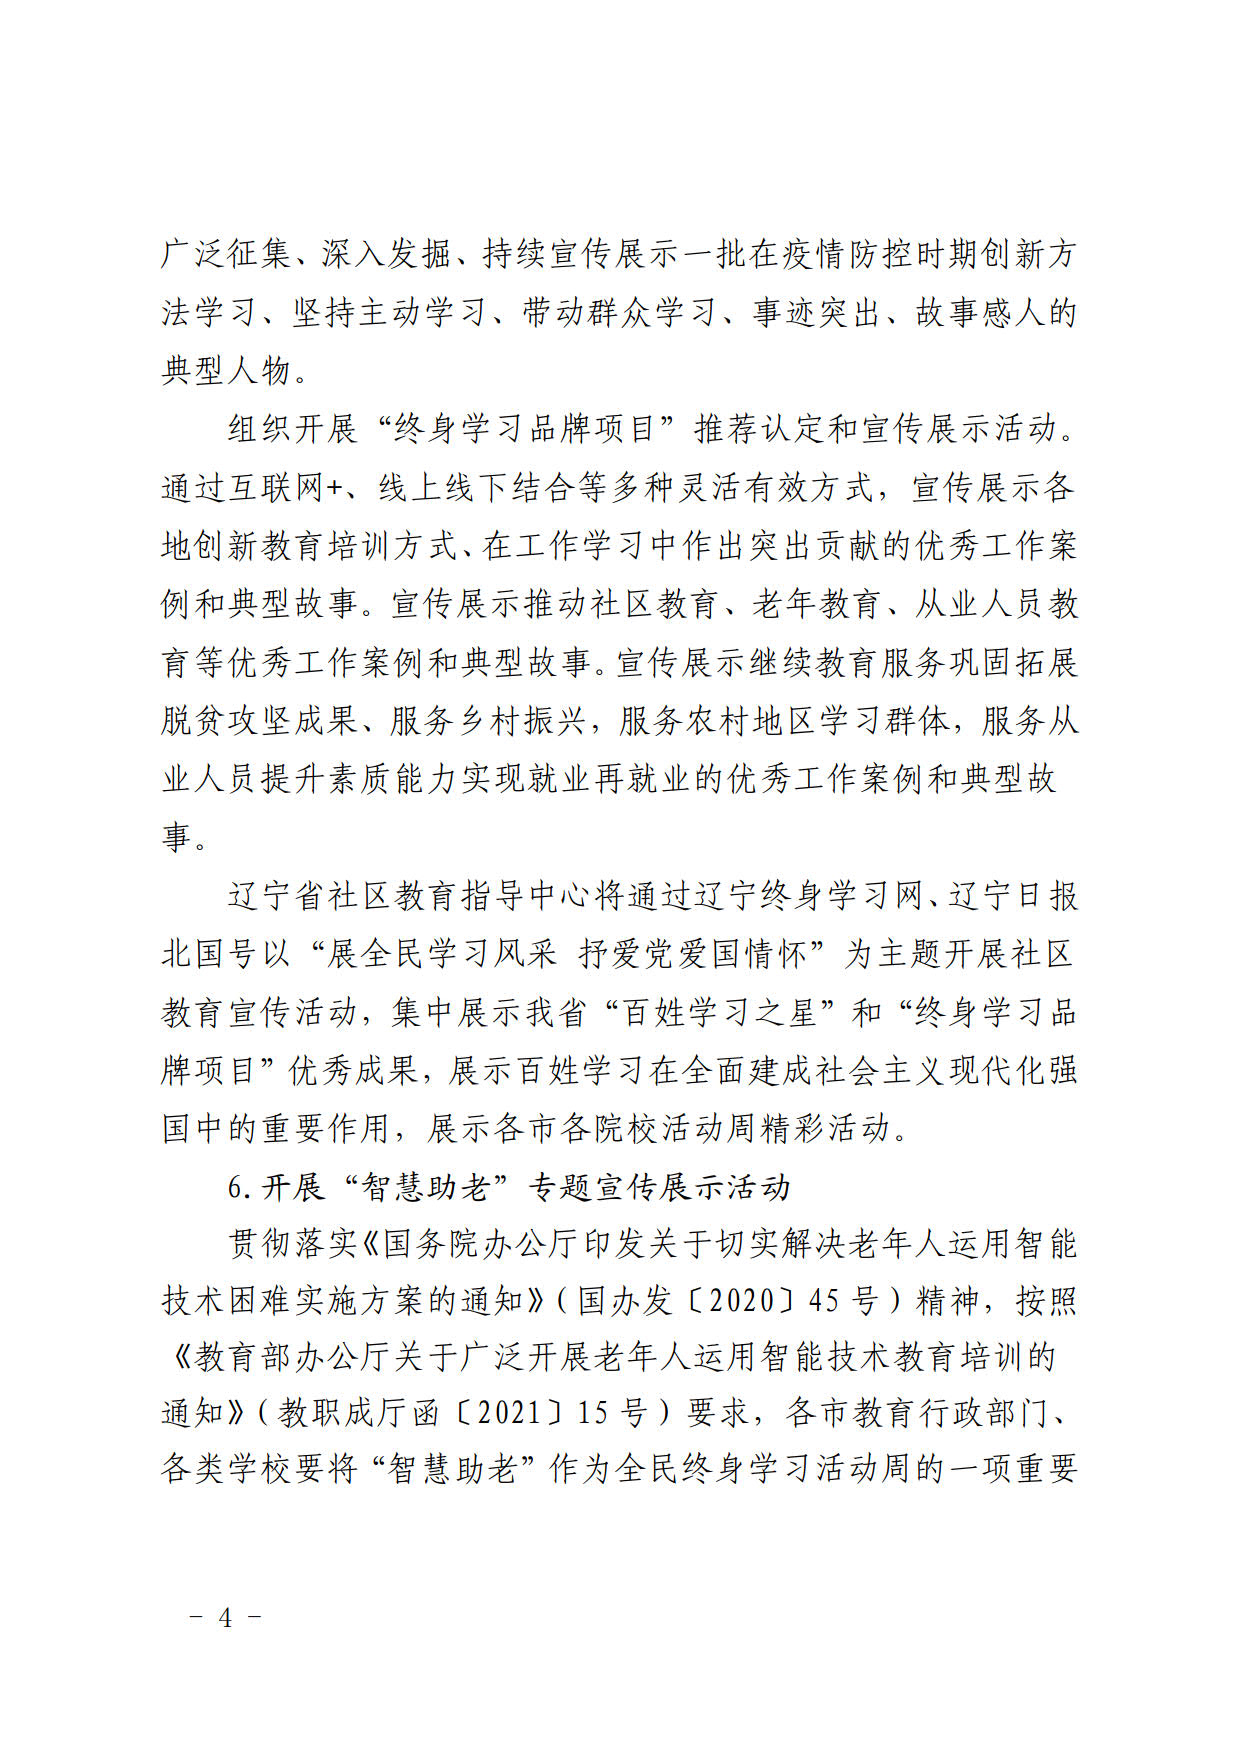 辽宁省教育厅办公室关于做好2021年全民终身学习活动周工作的通知(2)_5.jpg